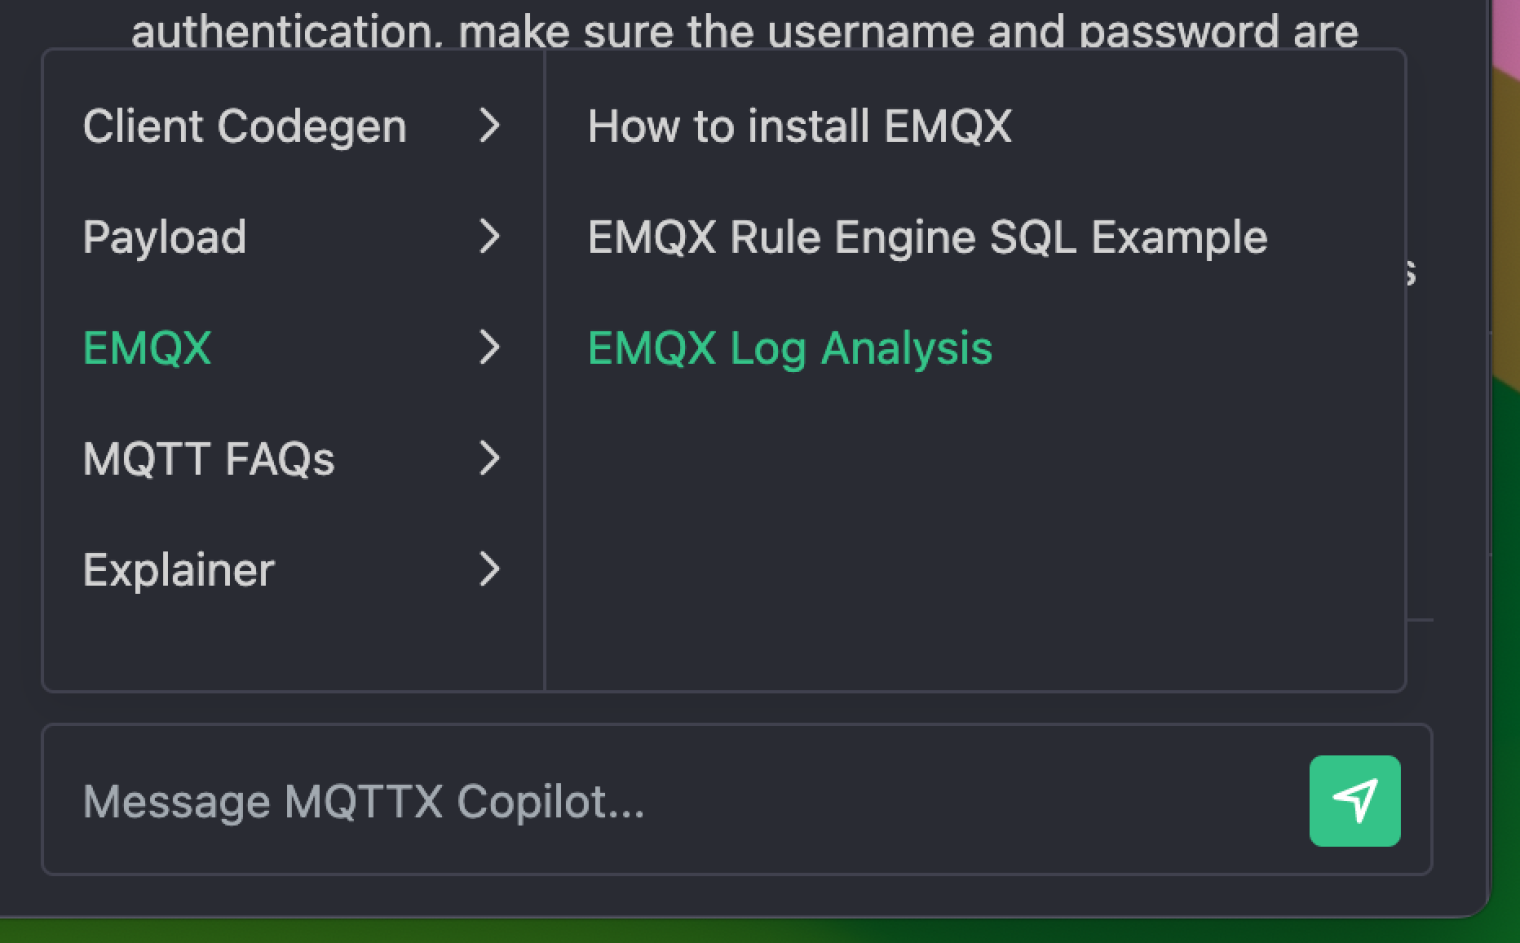 EMQX Log Analysis